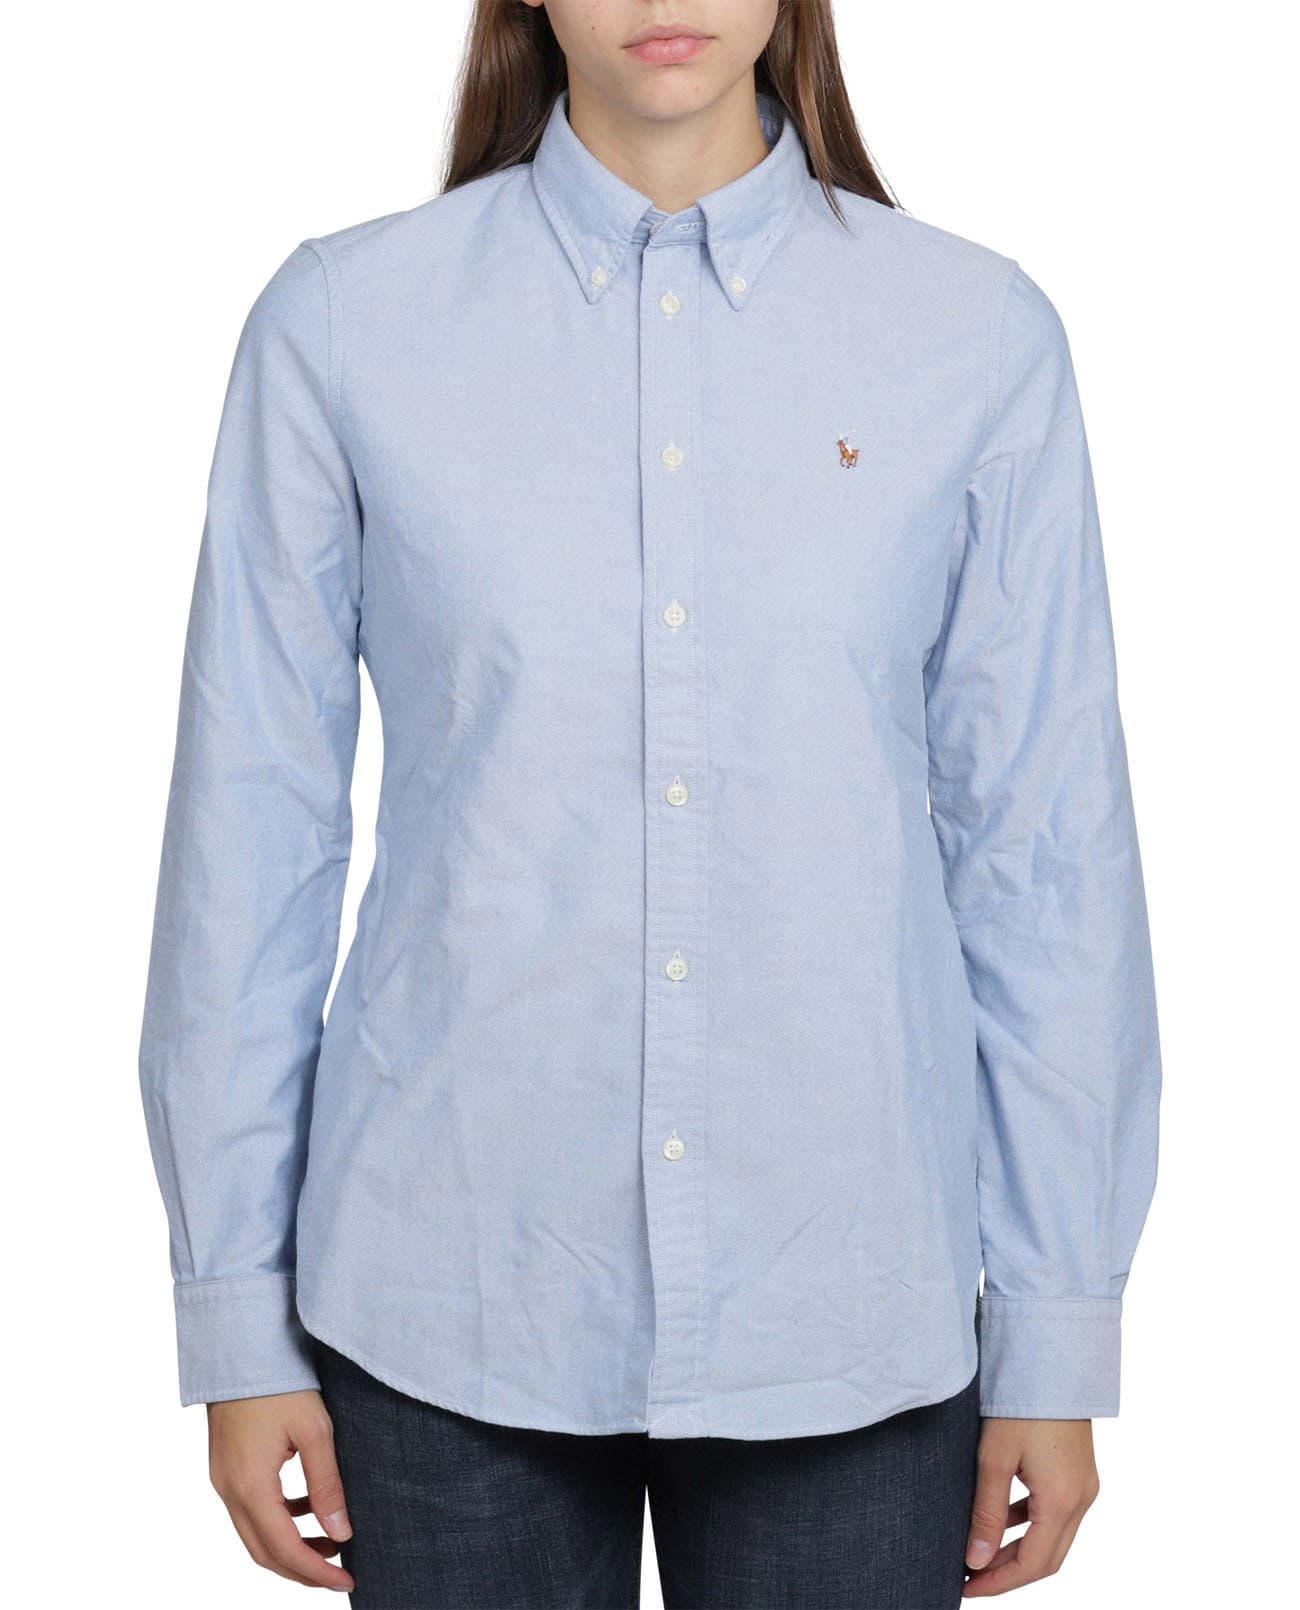 Polo Ralph Lauren Light Blue Shirt